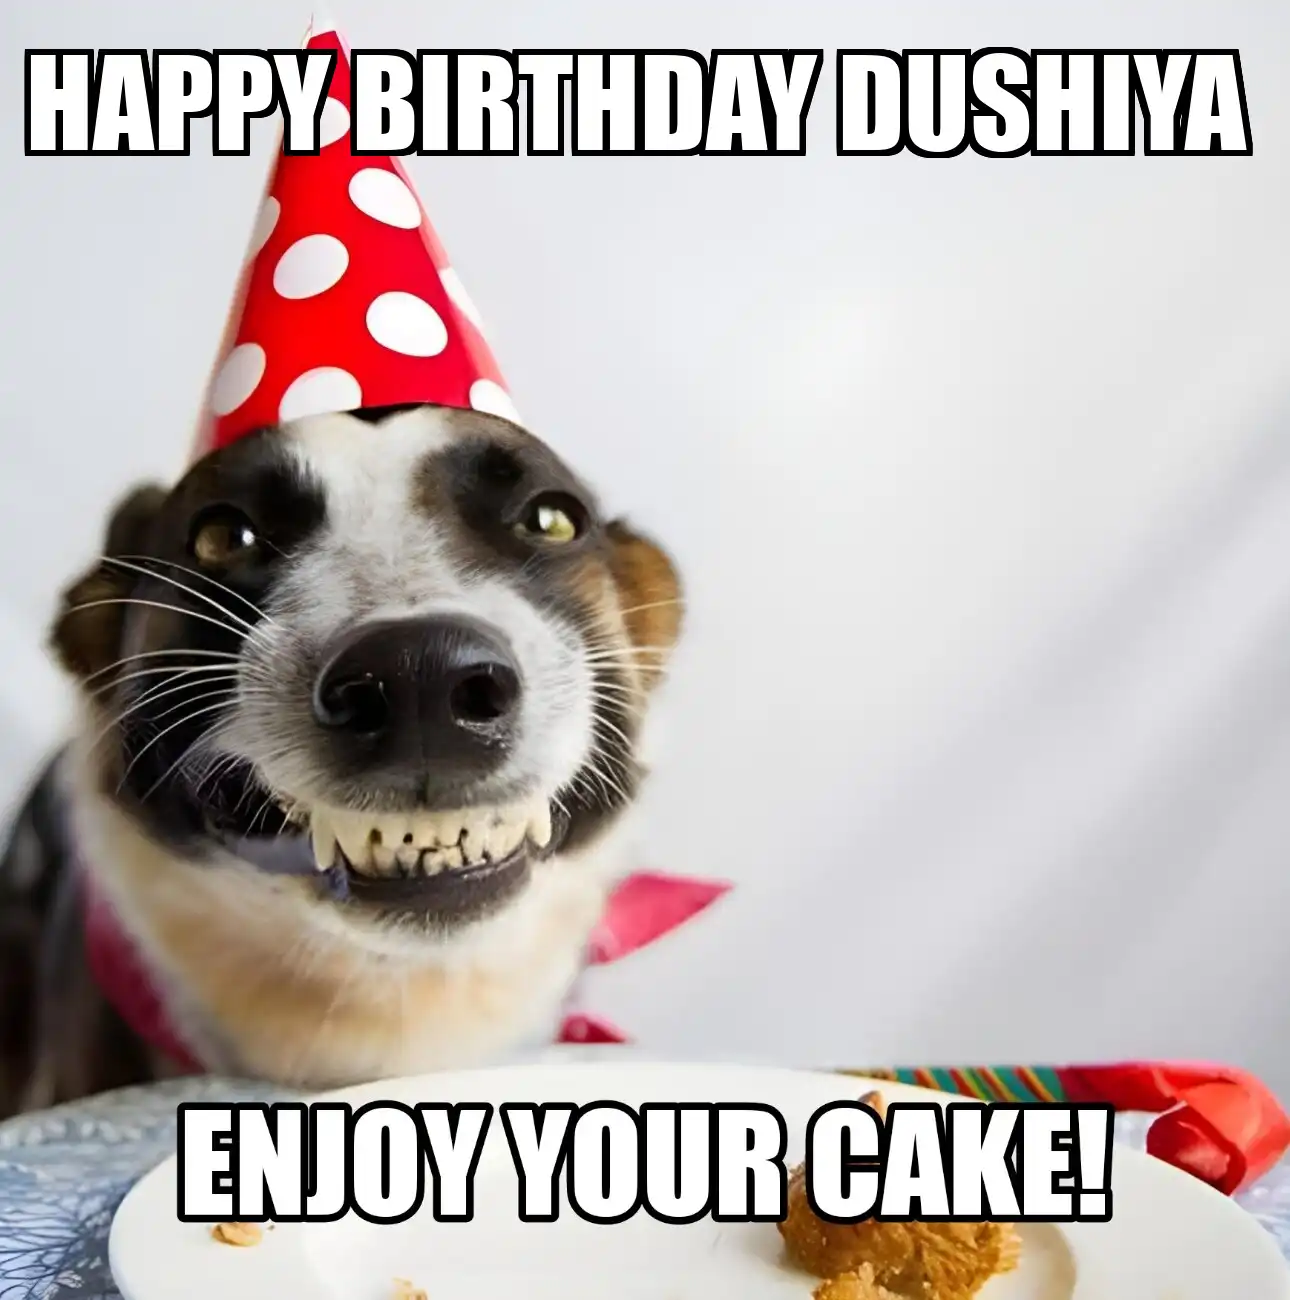 Happy Birthday Dushiya Enjoy Your Cake Dog Meme